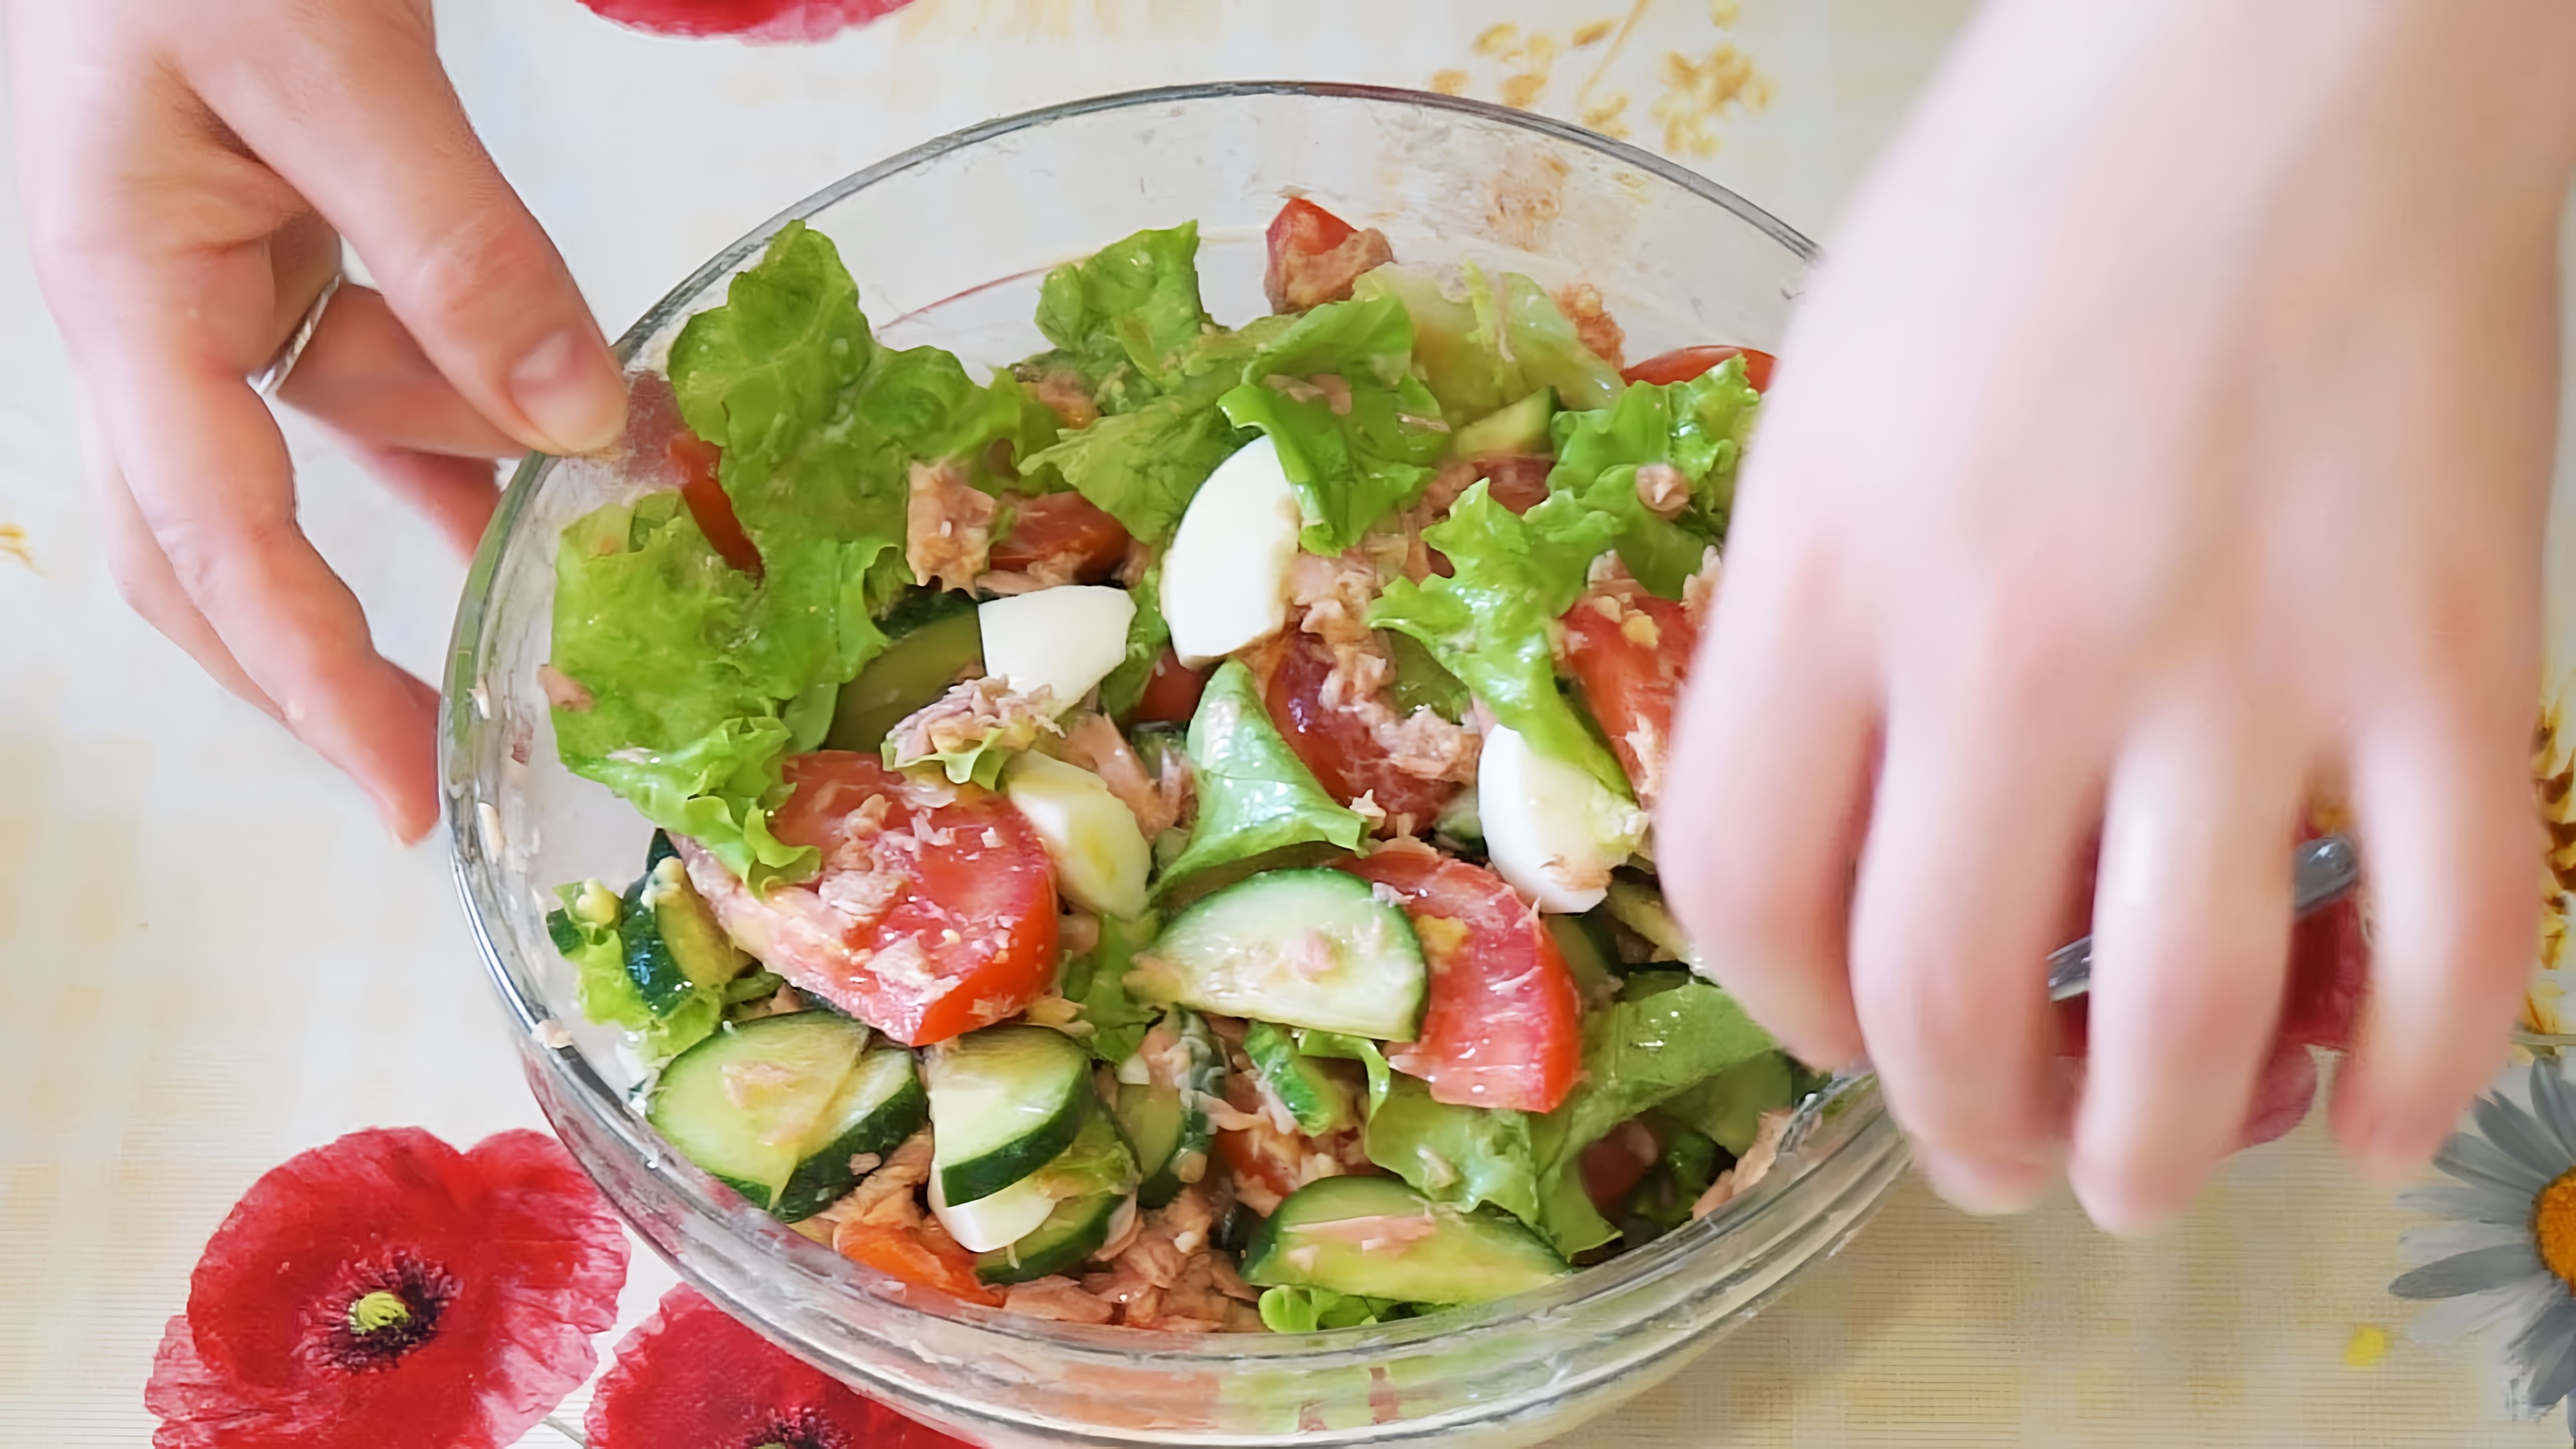 В этом видео демонстрируется процесс приготовления салата с тунцом и овощами